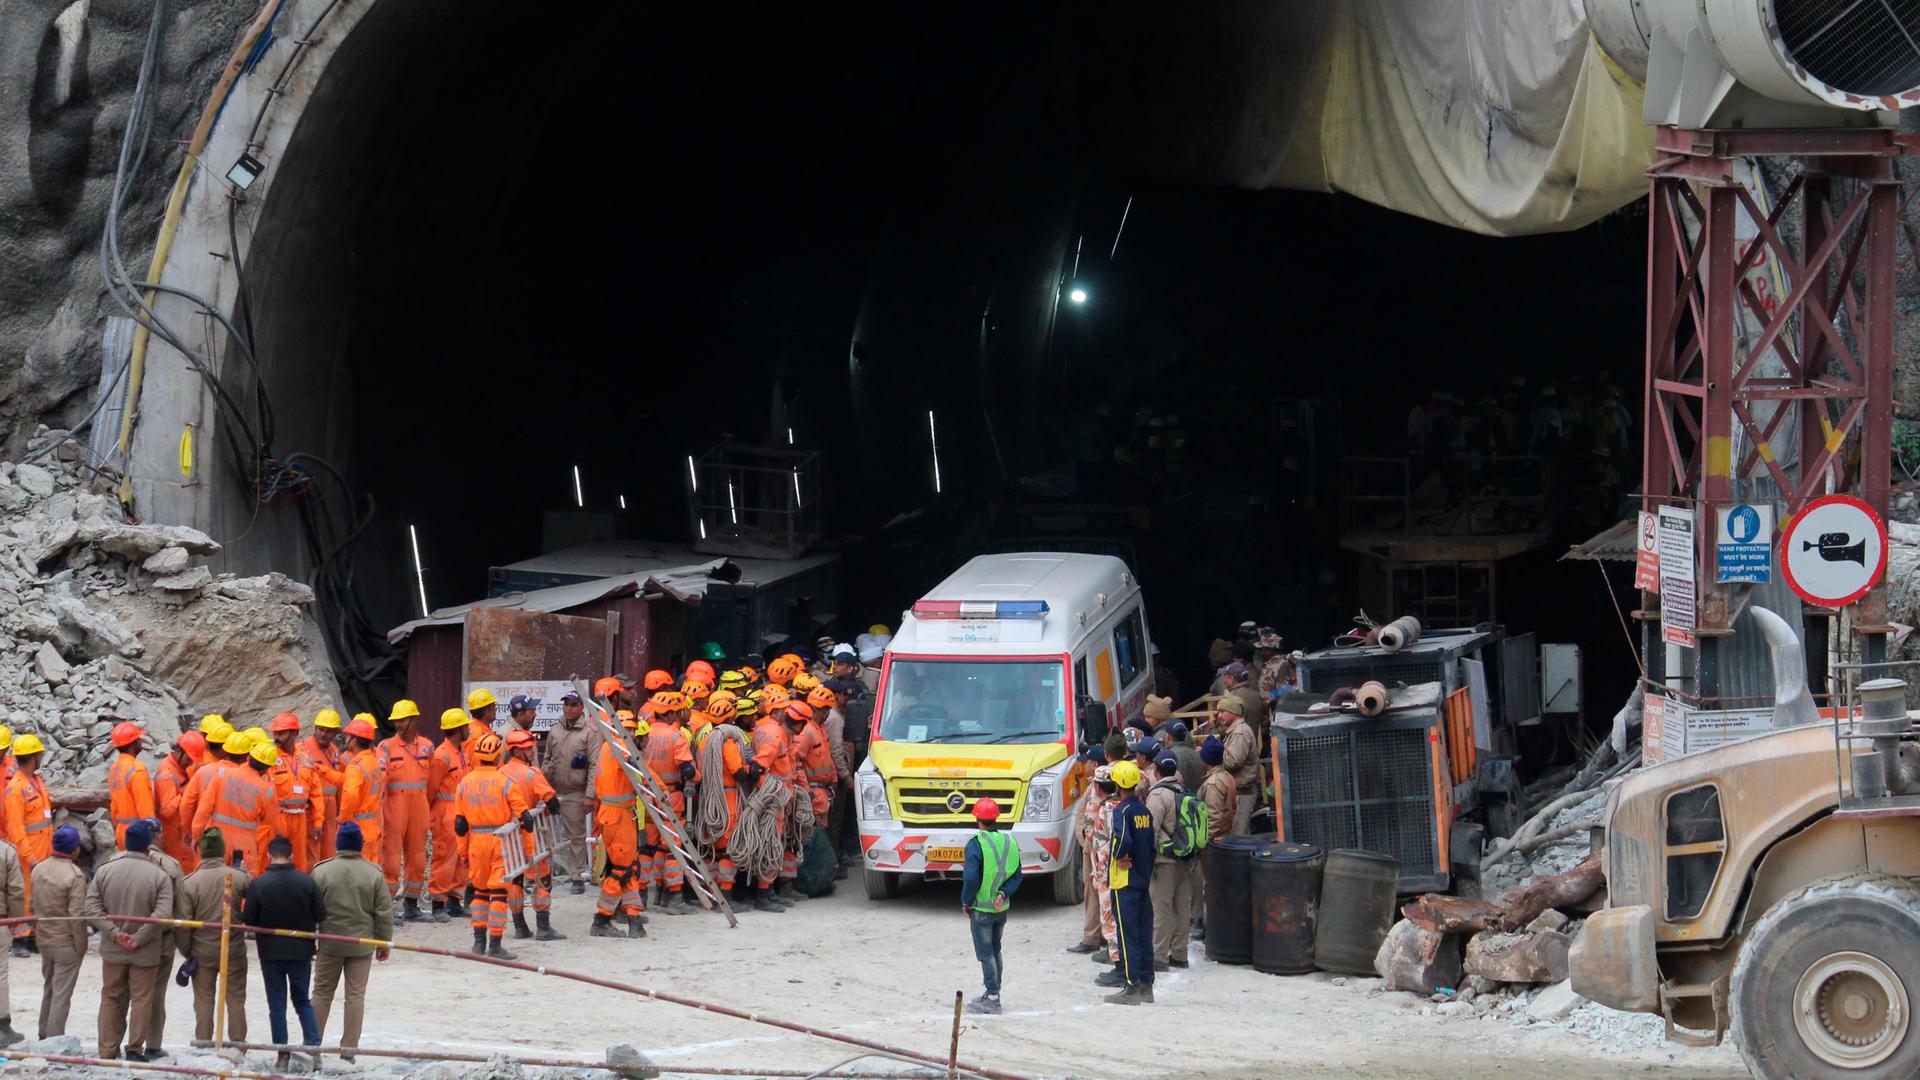 Vor dem riesigen Tunneleingang stehen viele Rettungskräfte in orangefarbenen Anzügen sowie das Rettungsfahrzeug.